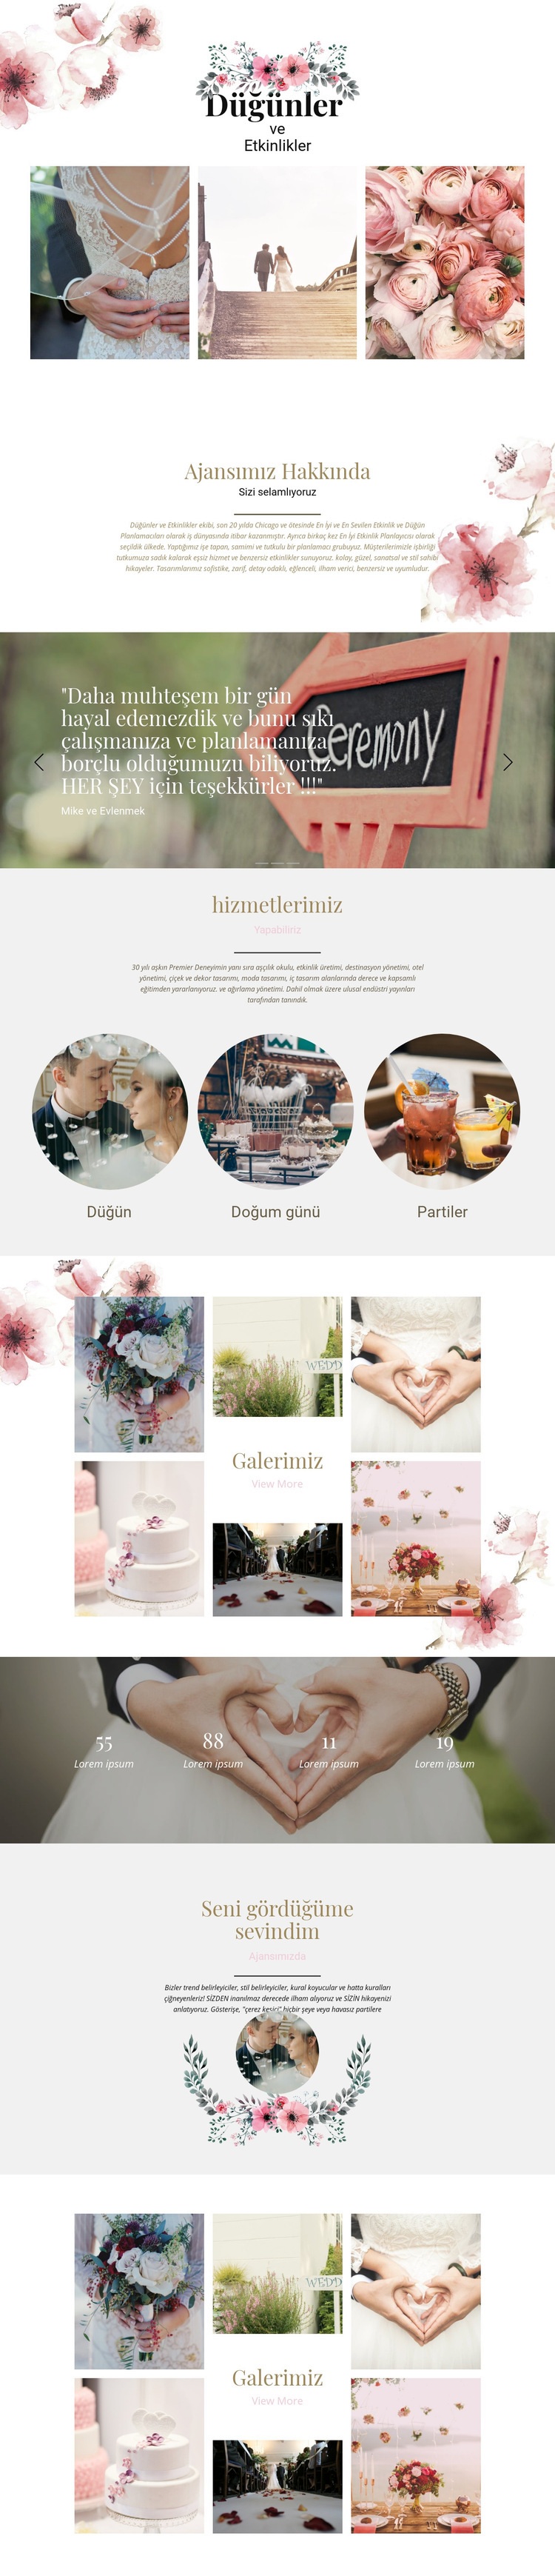 Düğün anları Web sitesi tasarımı